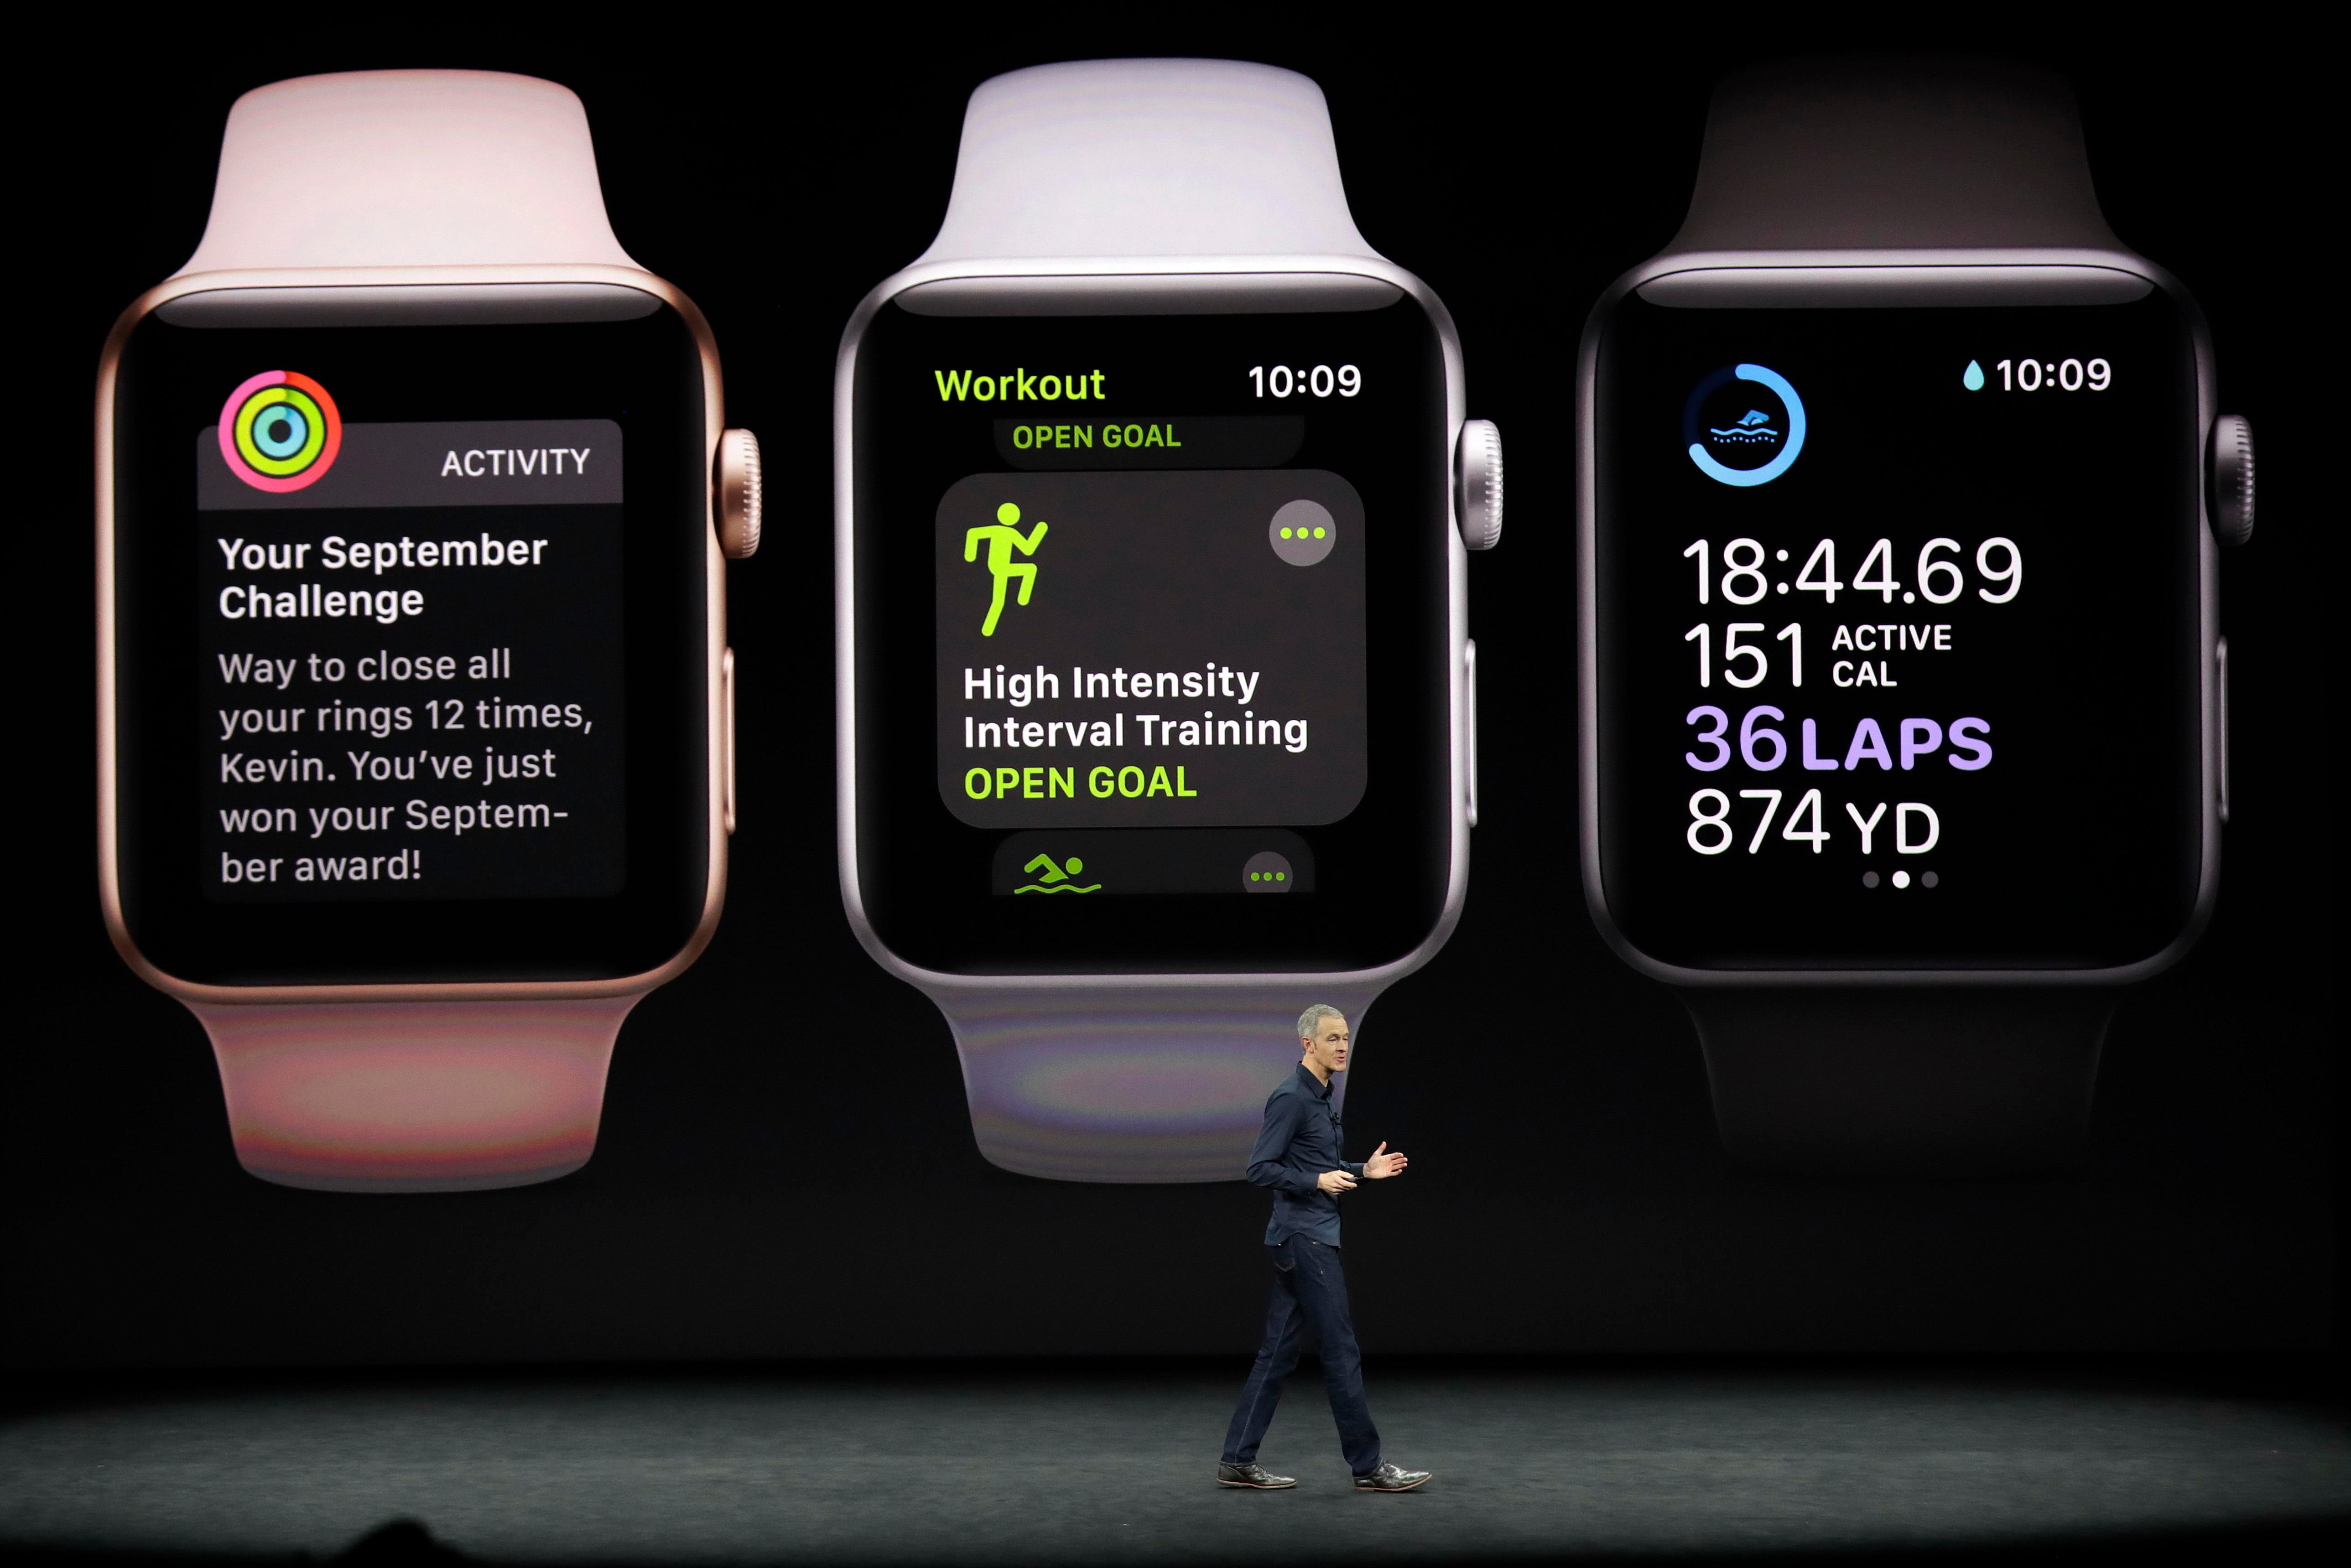   Den nya klockan är den tredje i Apples sortiment.